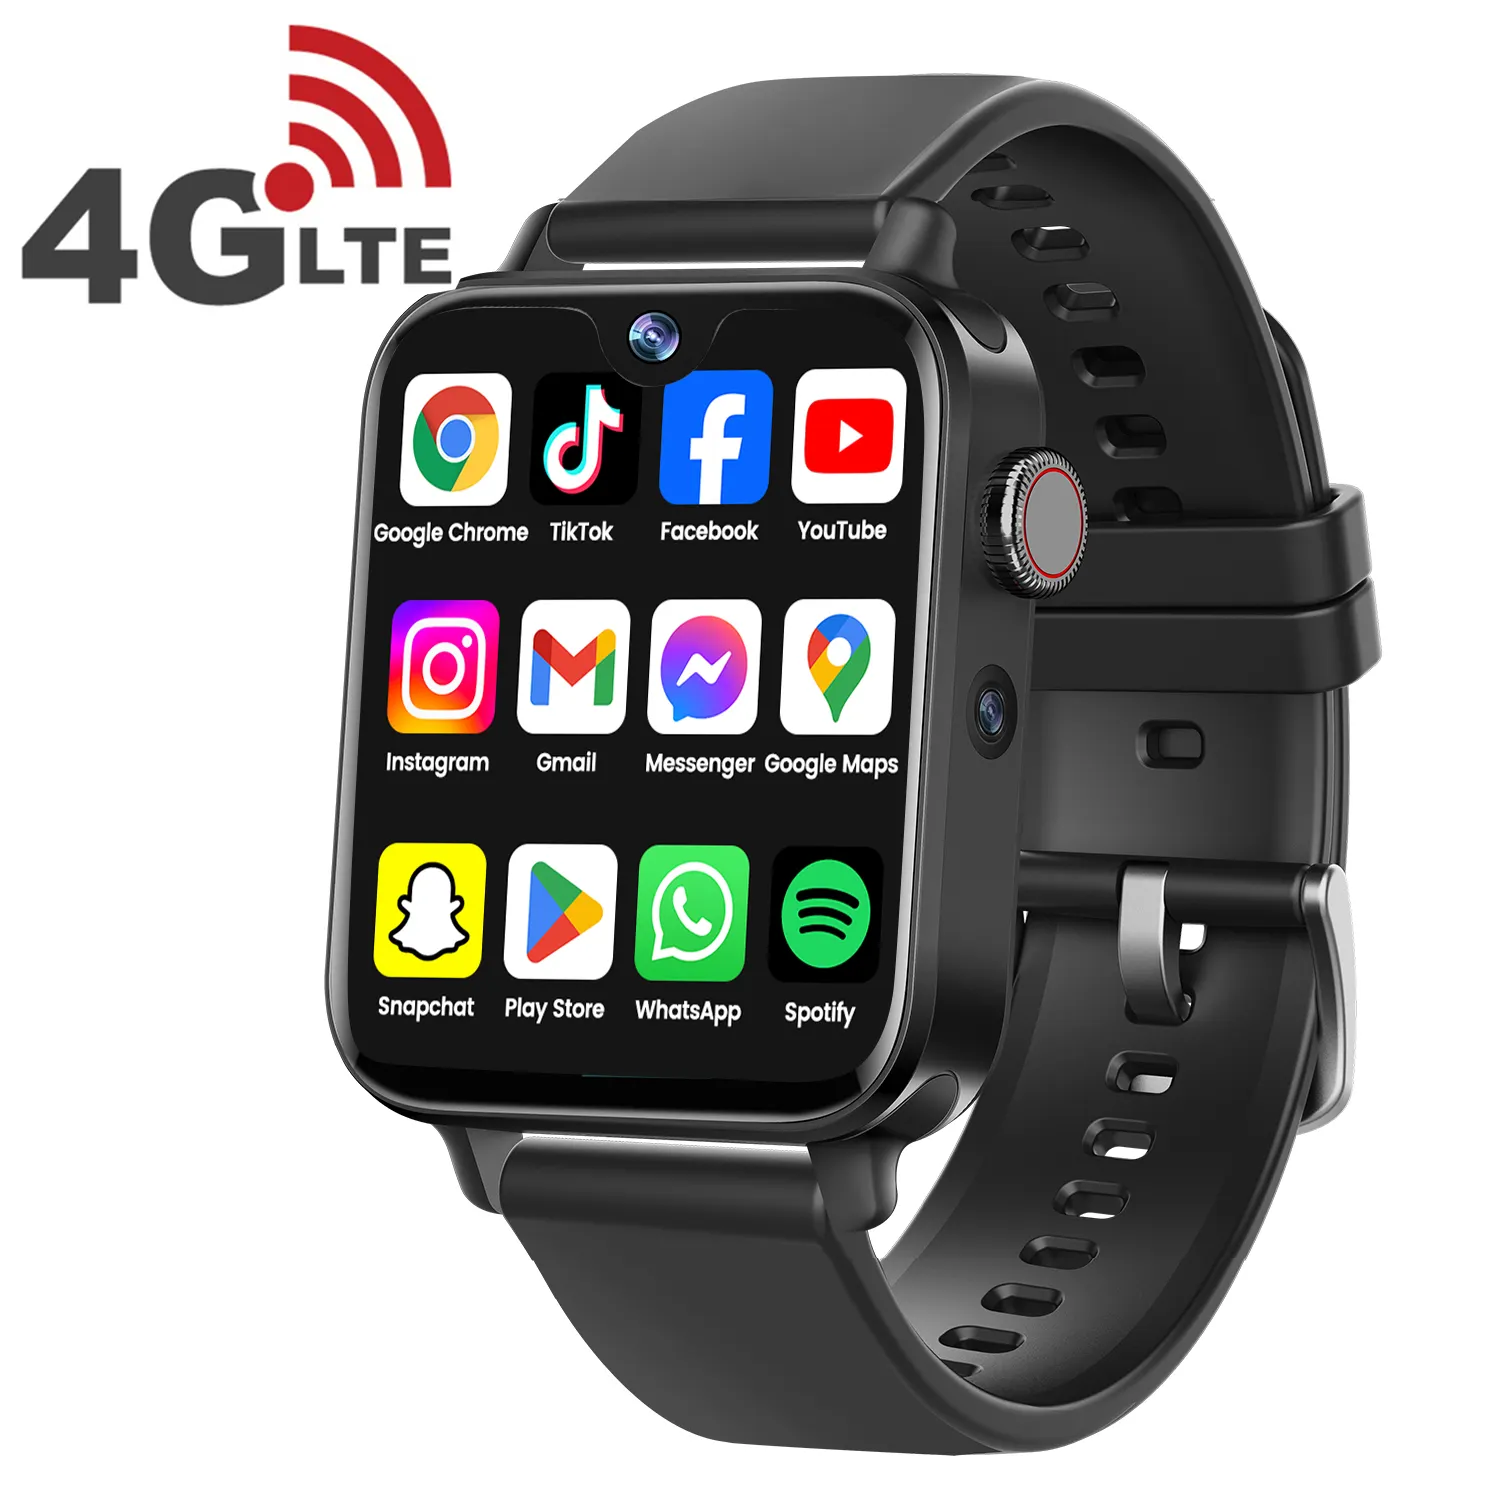 VALDUS 4G Android Téléphone Écran Tactile AMOLED WIFI GPS Smartwatch 4G All Netcom 500W Caméra Reconnaissance de Visage Smart Watch I1 Pro